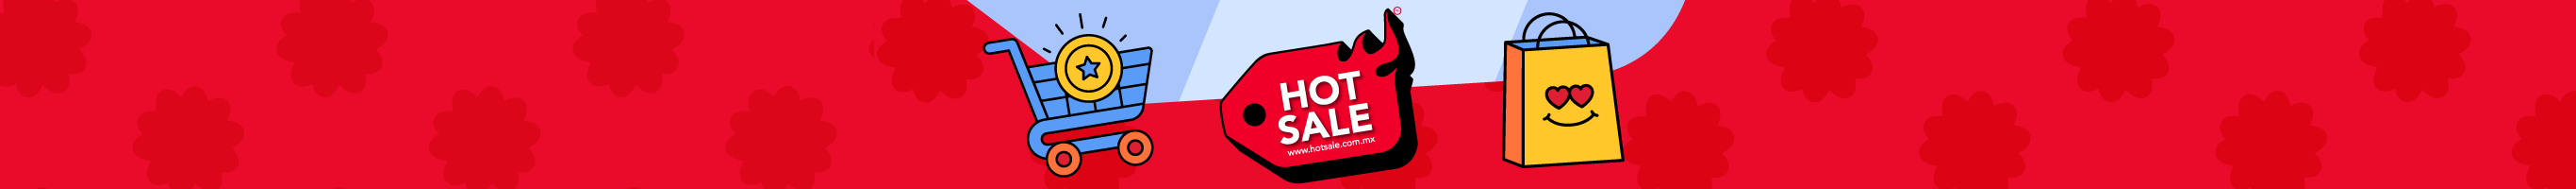 Importación - Hot Sale